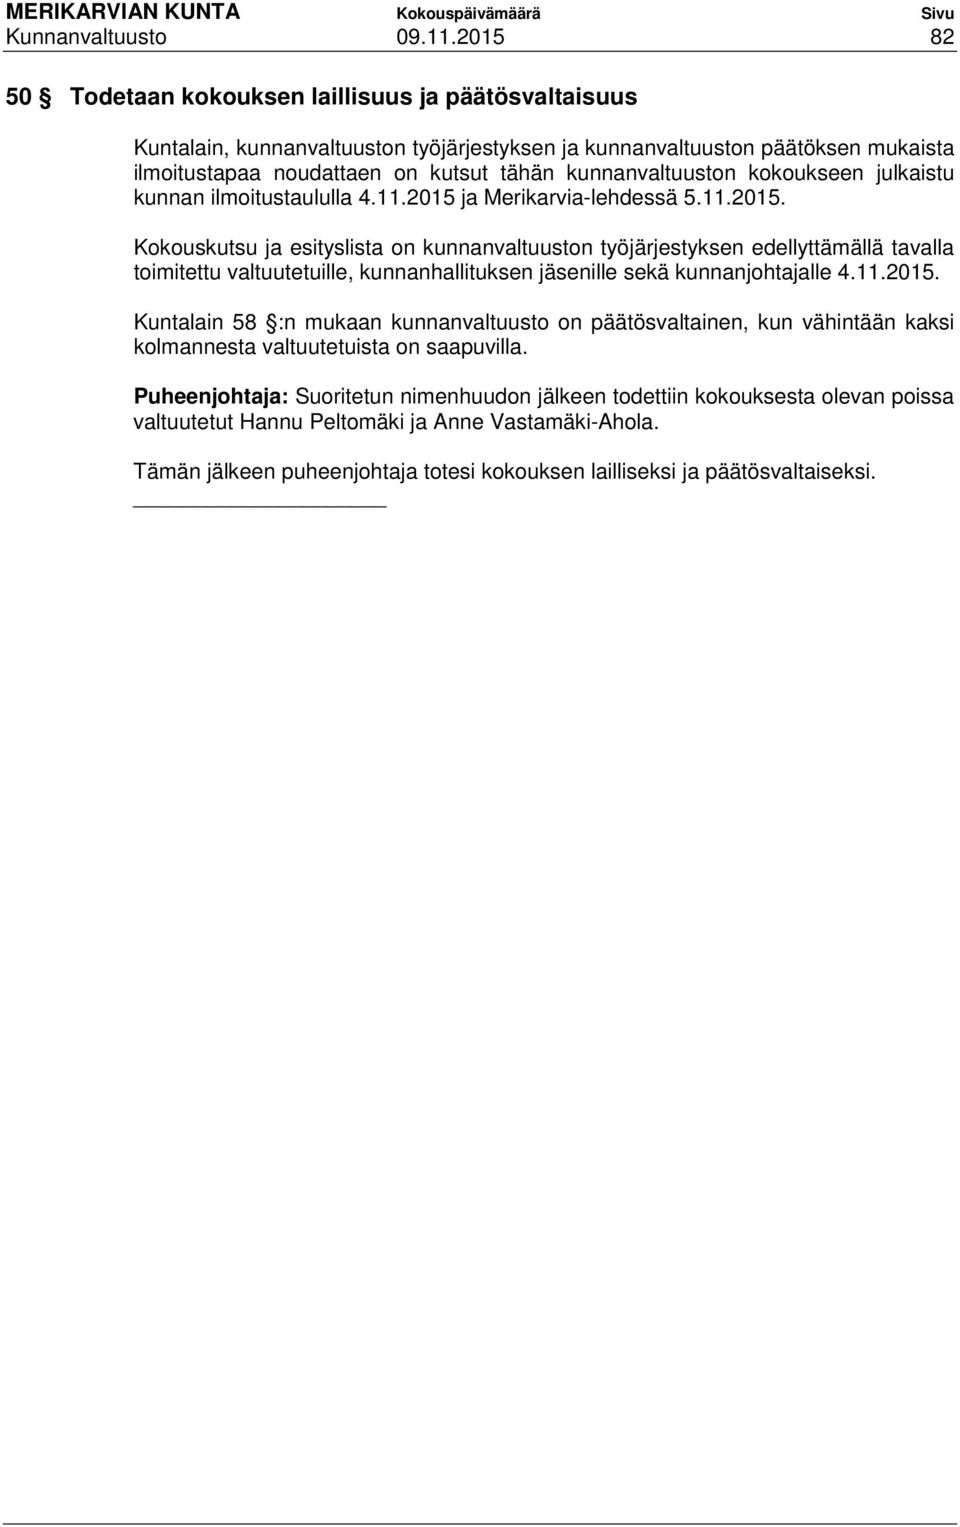 Marika Uimaluoto Tämä kokouskutsu on julkipantu julkisten kuulutusten  ilmoitustaululle - PDF Ilmainen lataus